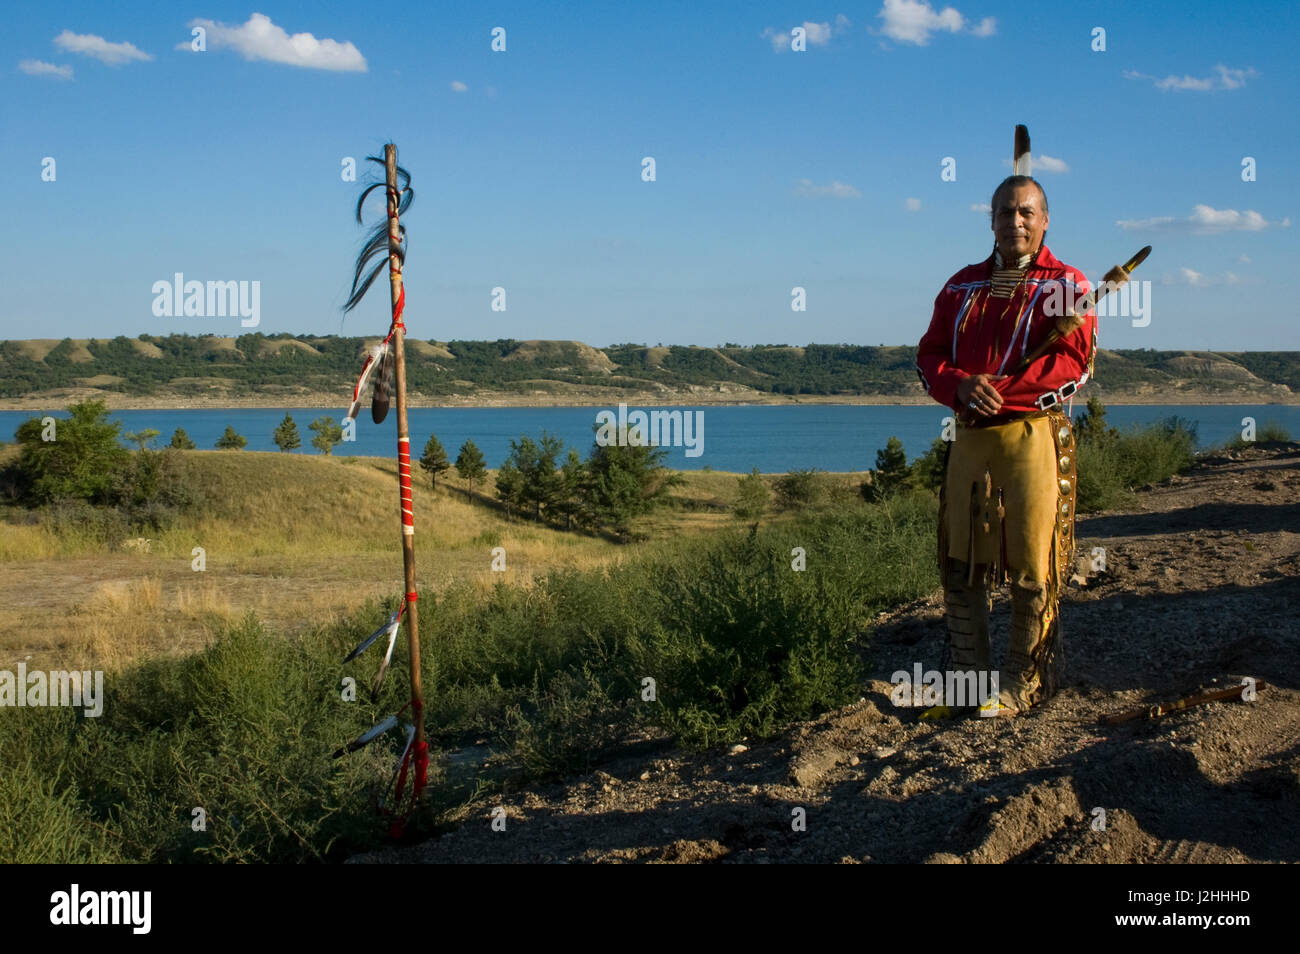 Trois tribus affiliées membre d'une tribu, Keith Ours, est un joueur de flûte traditionnelle autochtone qui est debout à côté d'un personnel de l'Aigle orné de fourrure queue buffalo surplombant le lac Sakakawea dans l'arrière-plan Banque D'Images